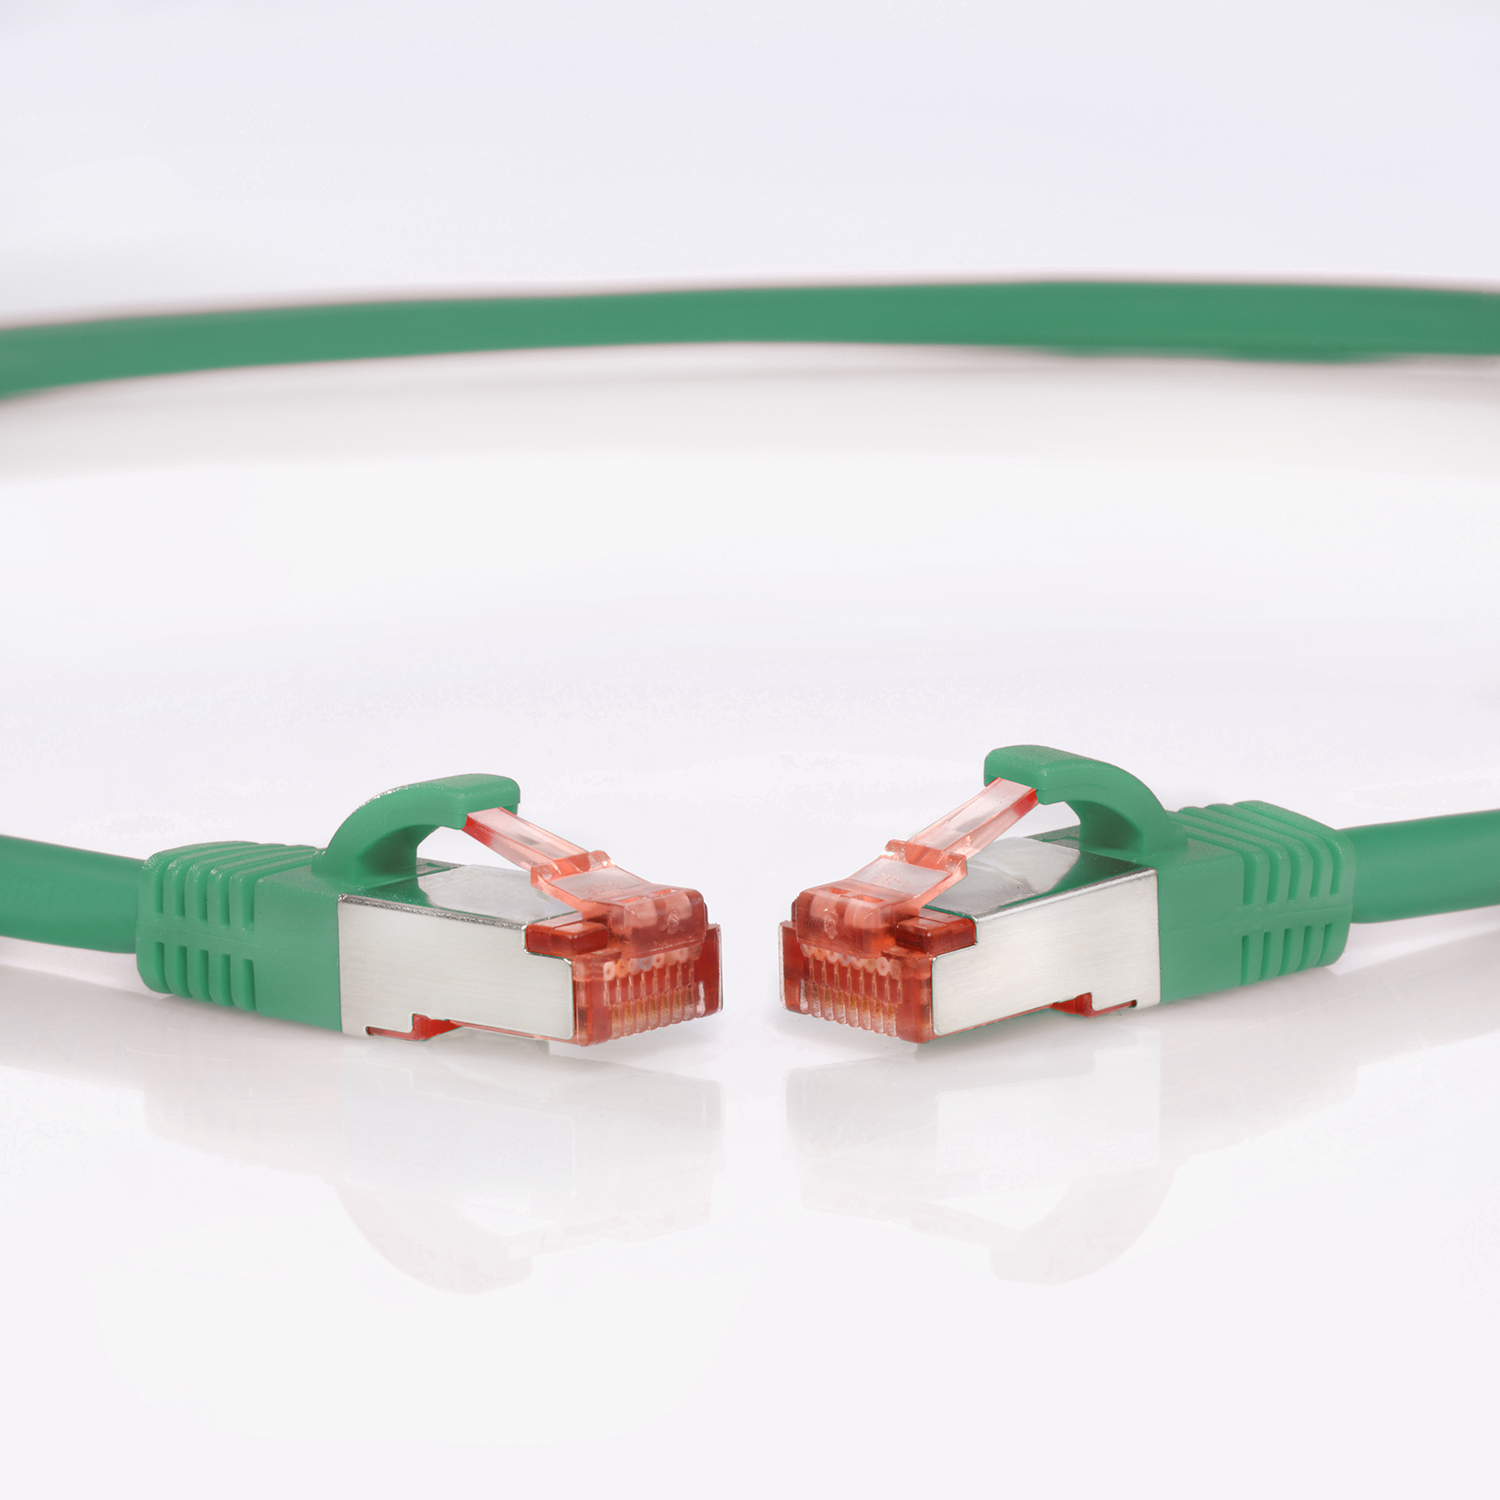 Netzwerkkabel 5er grün, / m 1000Mbit, Patchkabel Netzwerkkabel, 3m TPFNET Pack S/FTP 3